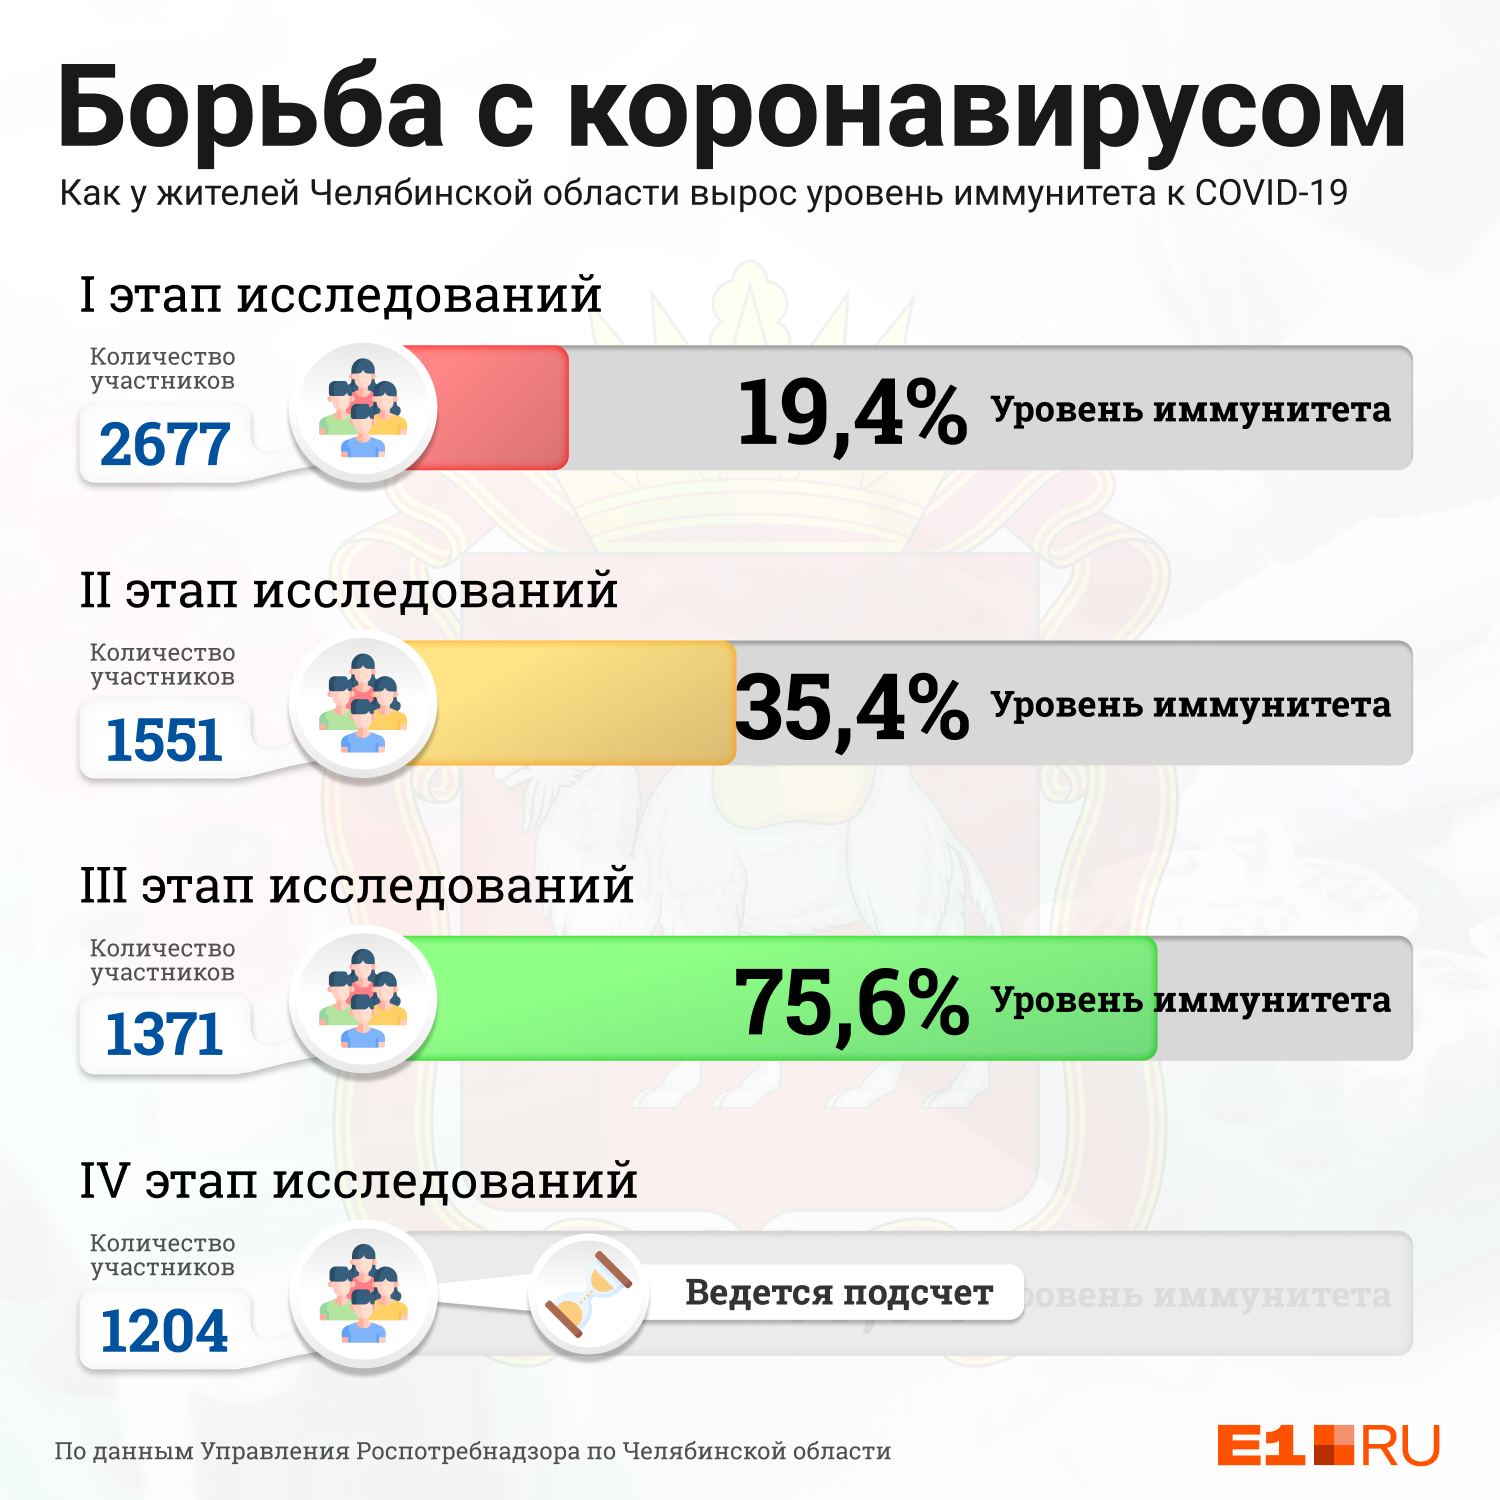 А в Челябинской области на третьем этапе исследований Роспотребнадзора уровень иммунитета был уже почти в три раза выше, чем в Свердловской 